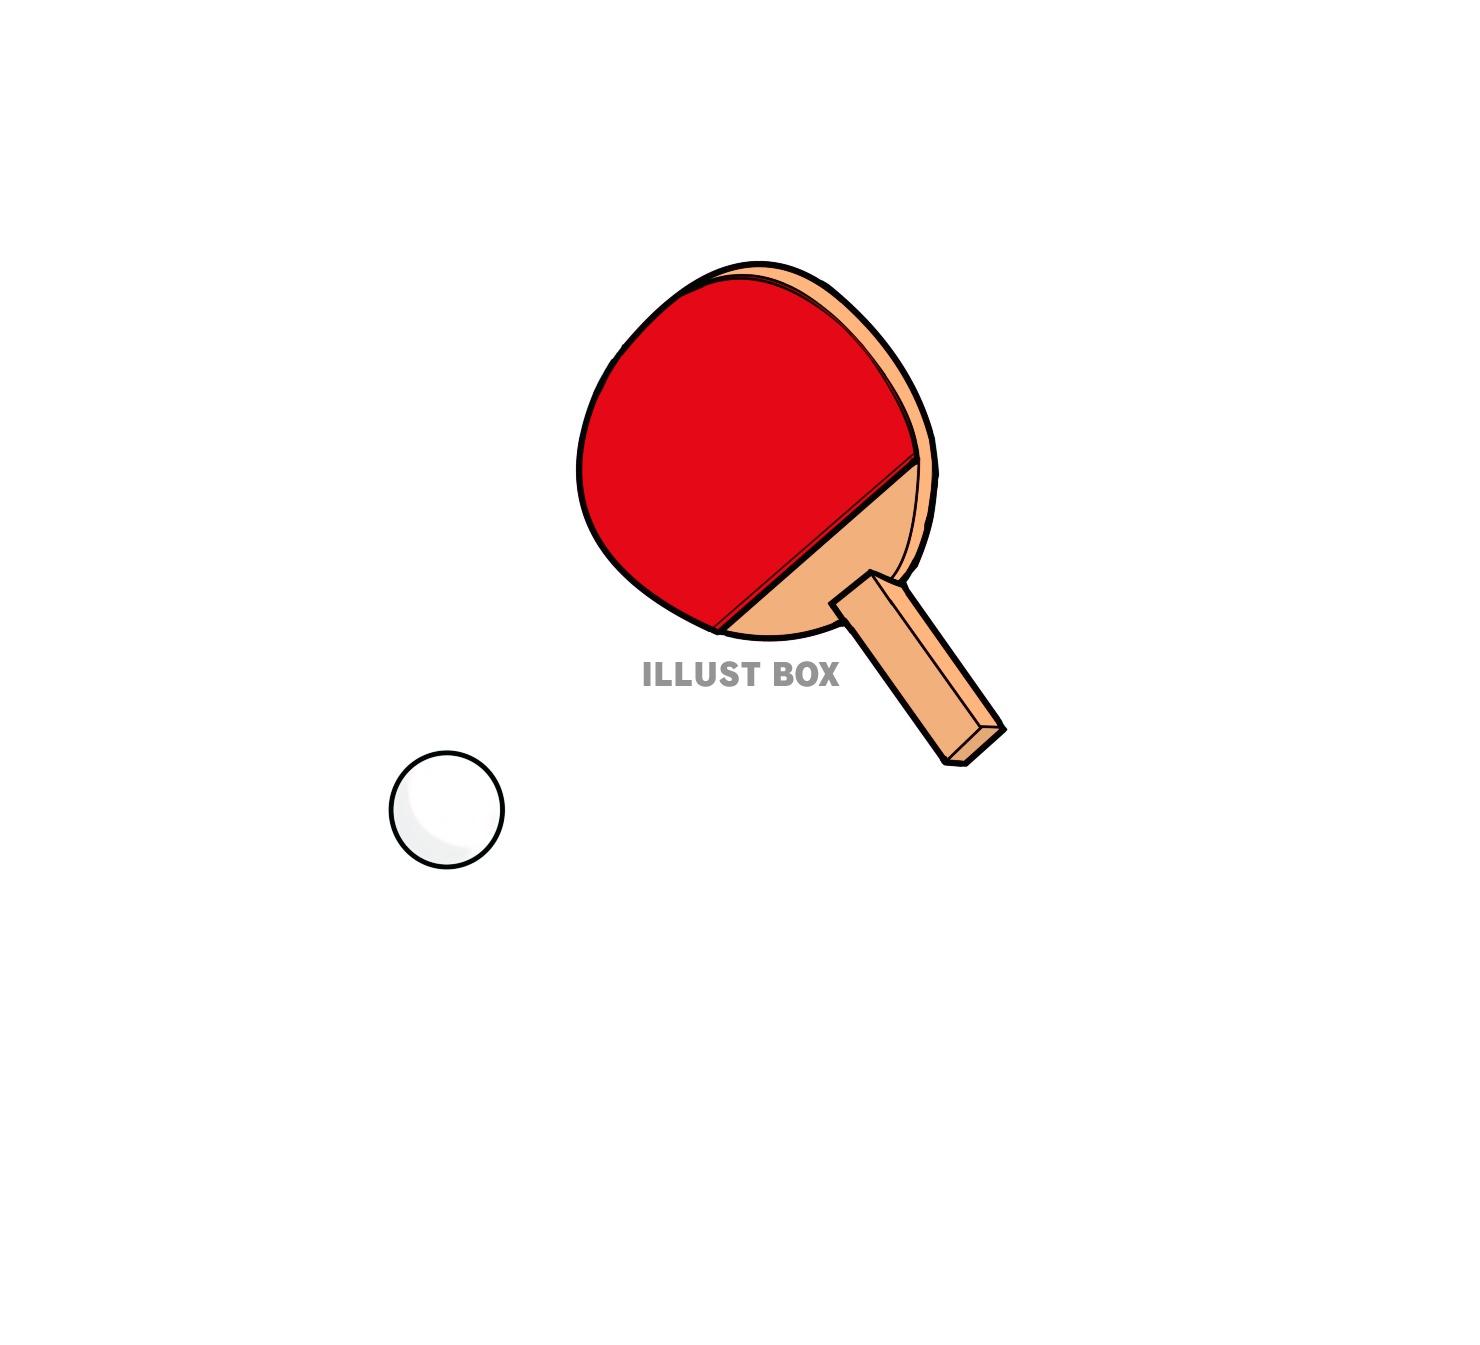 卓球 可愛い イラスト 可愛い 卓球 ラケット イラスト すべてのイラスト画像ソース